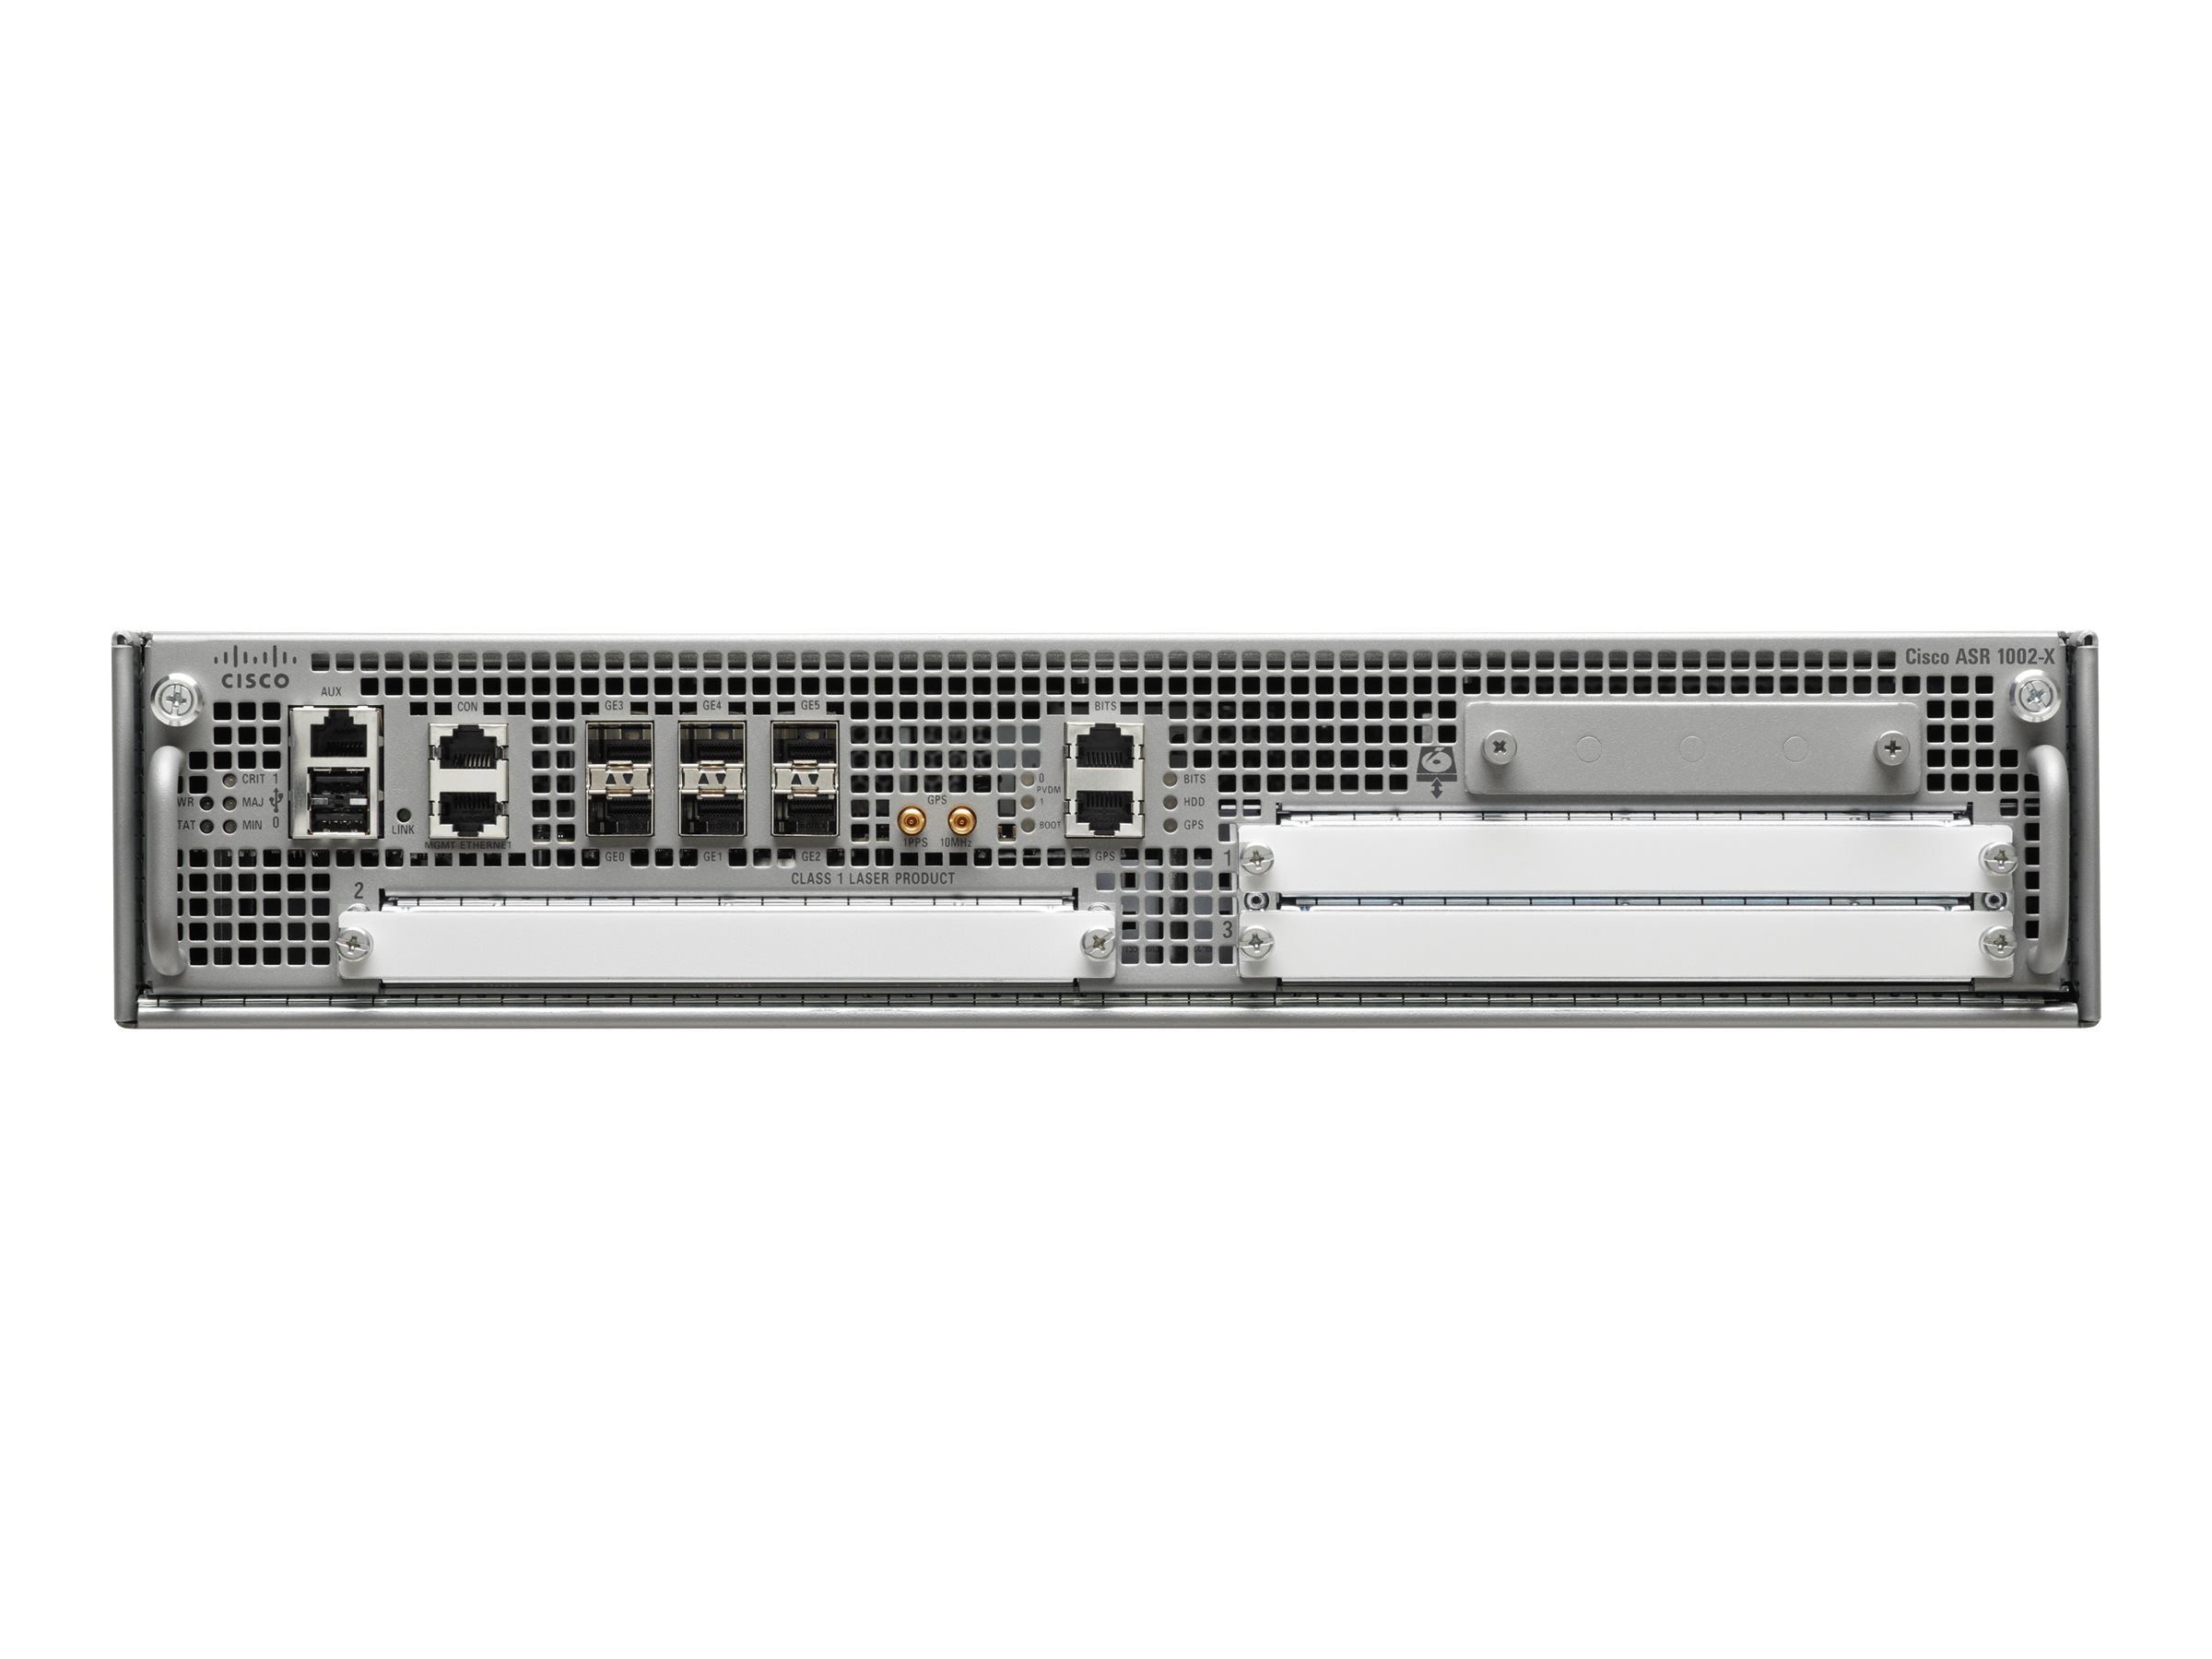 Cisco ASR 1002-HX - - Router - - 10GbE - Luftstrom von vorne nach hinten - an Rack montierbar - wiederhergestellt